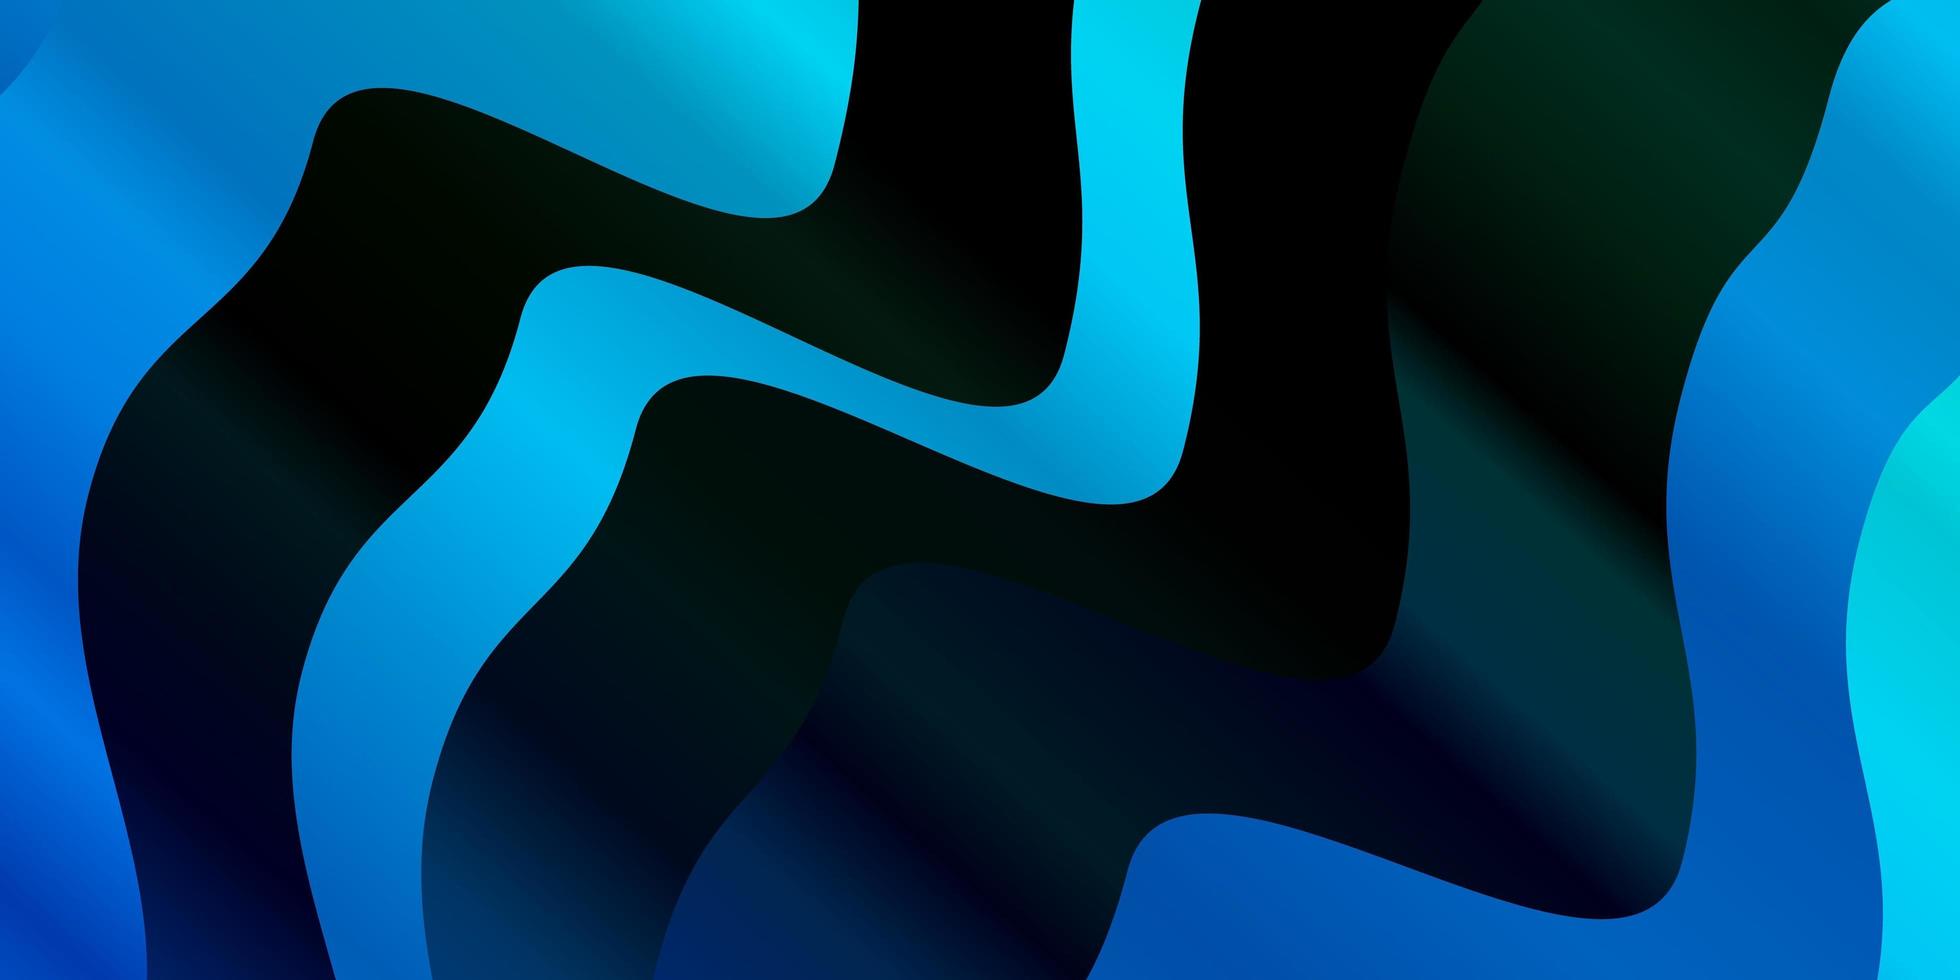 padrão de vetor azul escuro com linhas curvas ilustração gradiente abstrata com padrão de linhas irônicas para folhetos de livretos de negócios